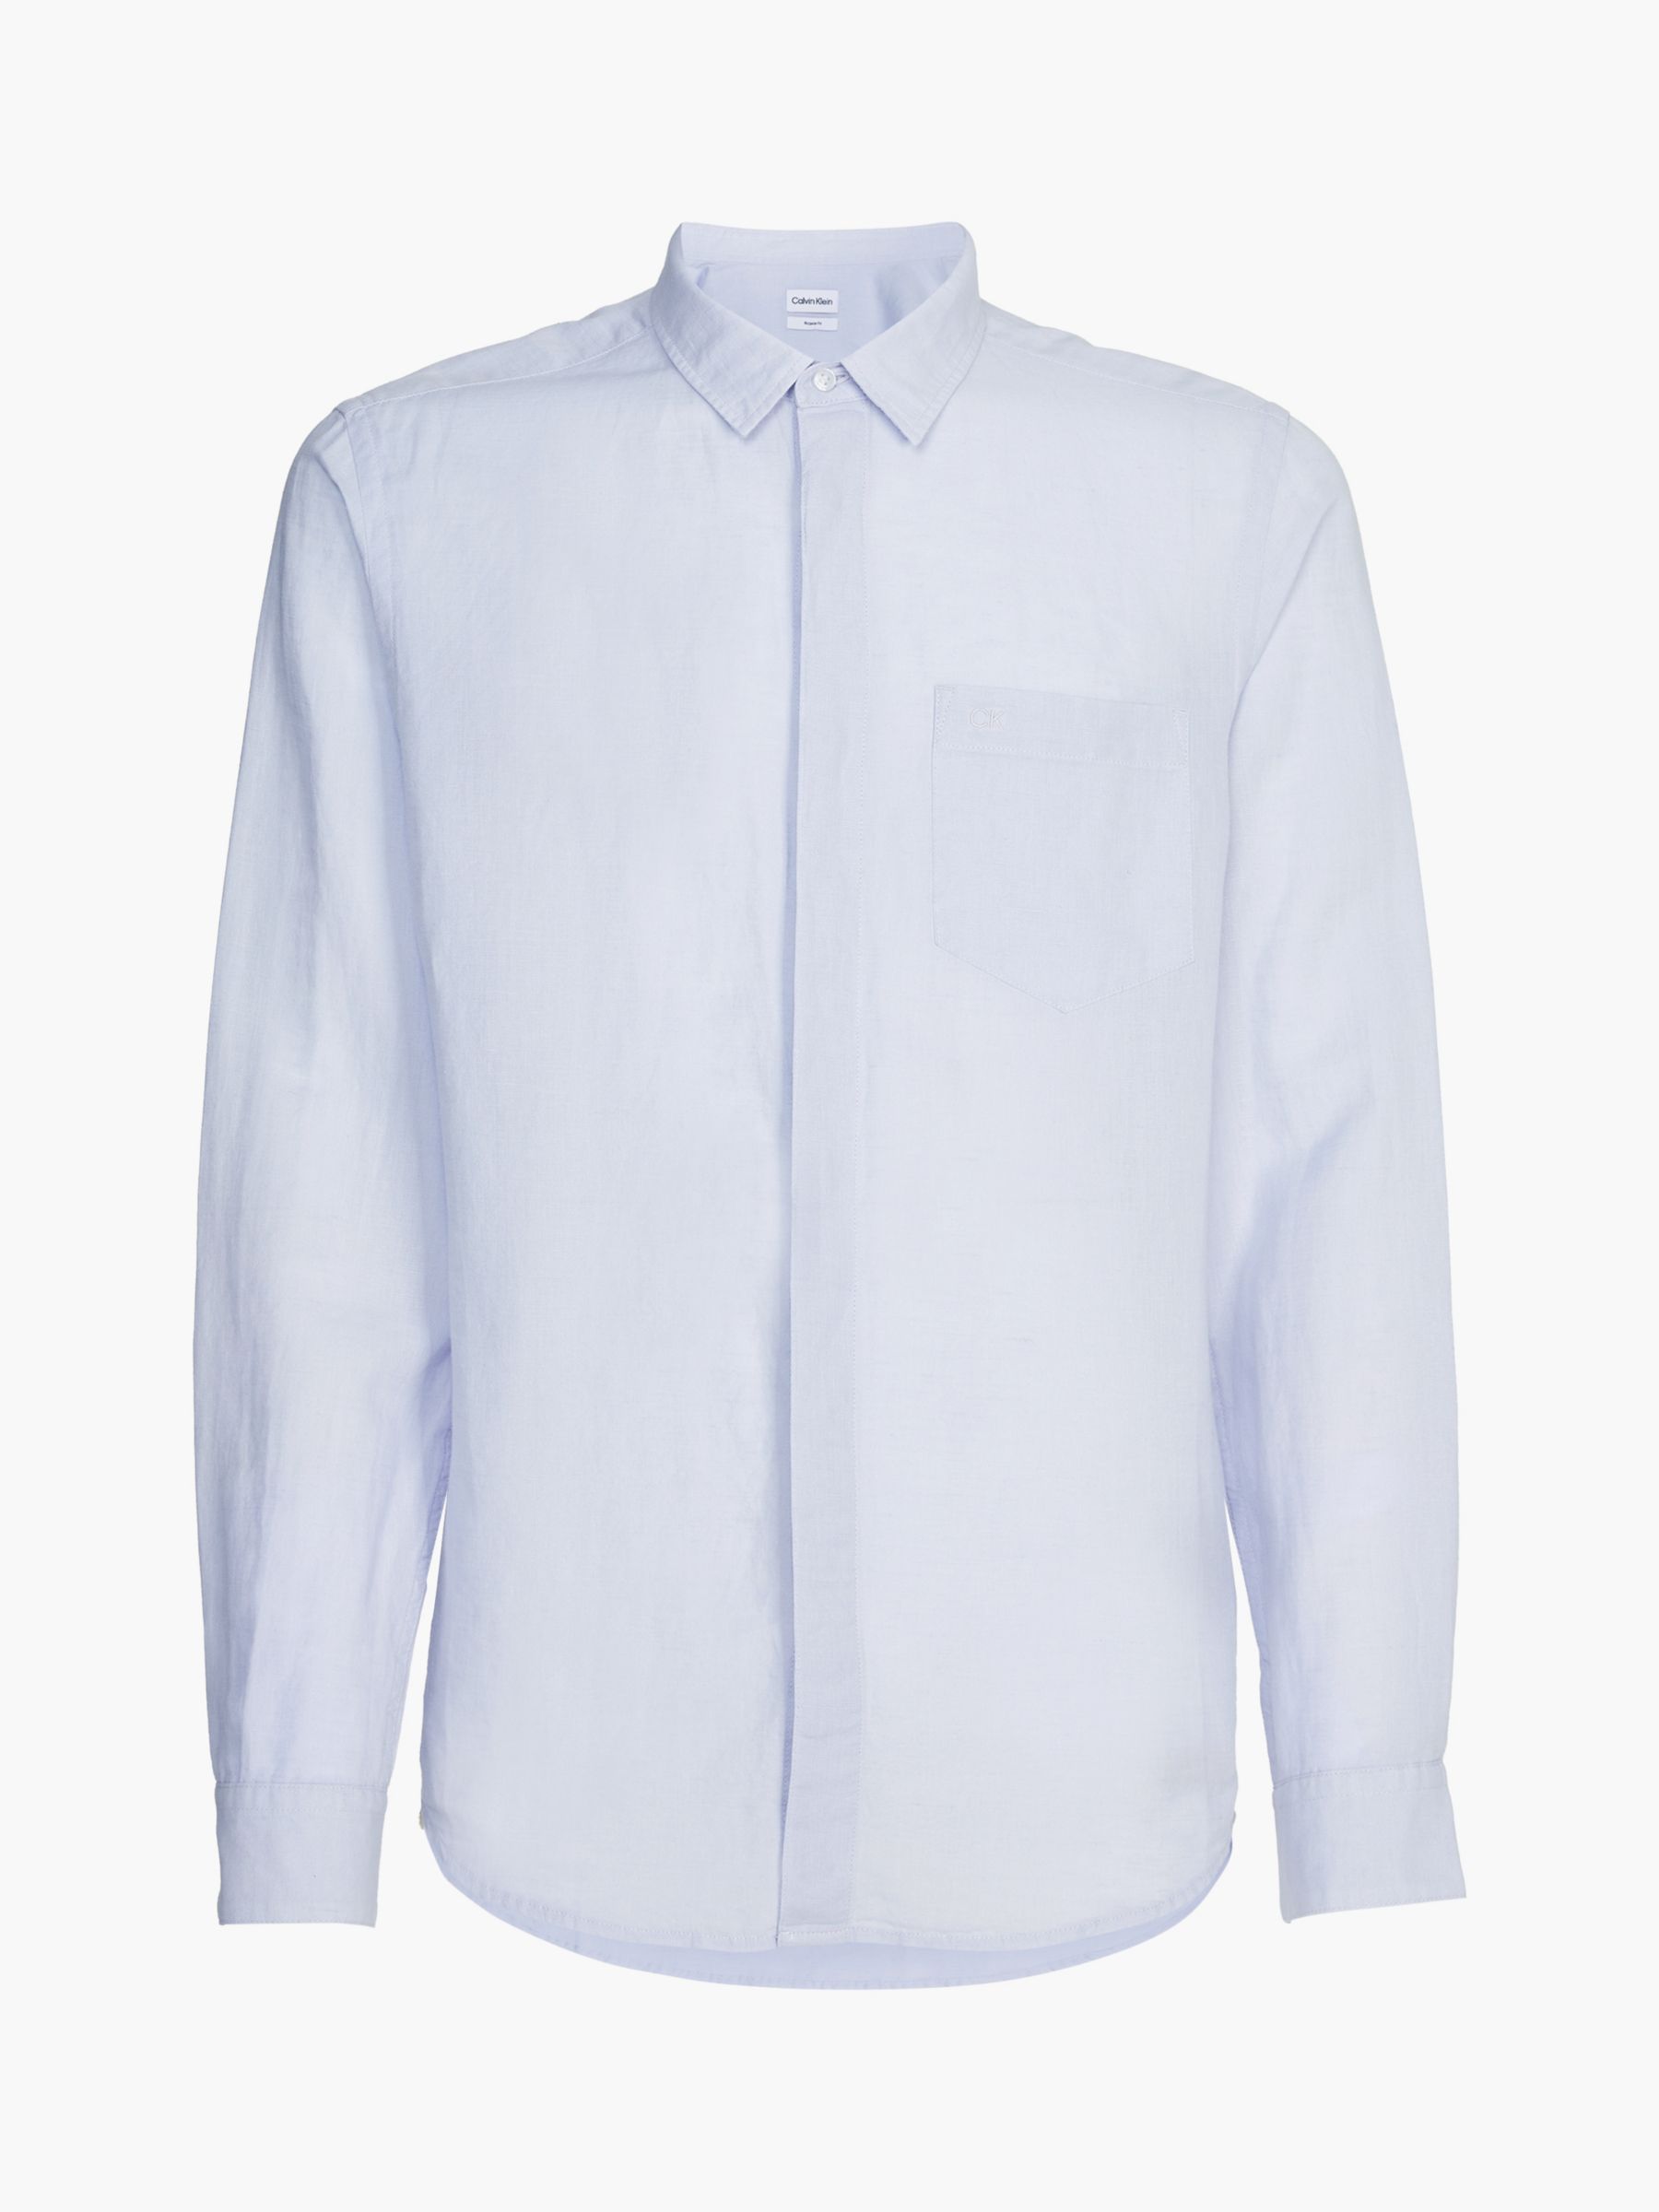 Calvin Klein Linen Cotton Shirt, Light Blue, M